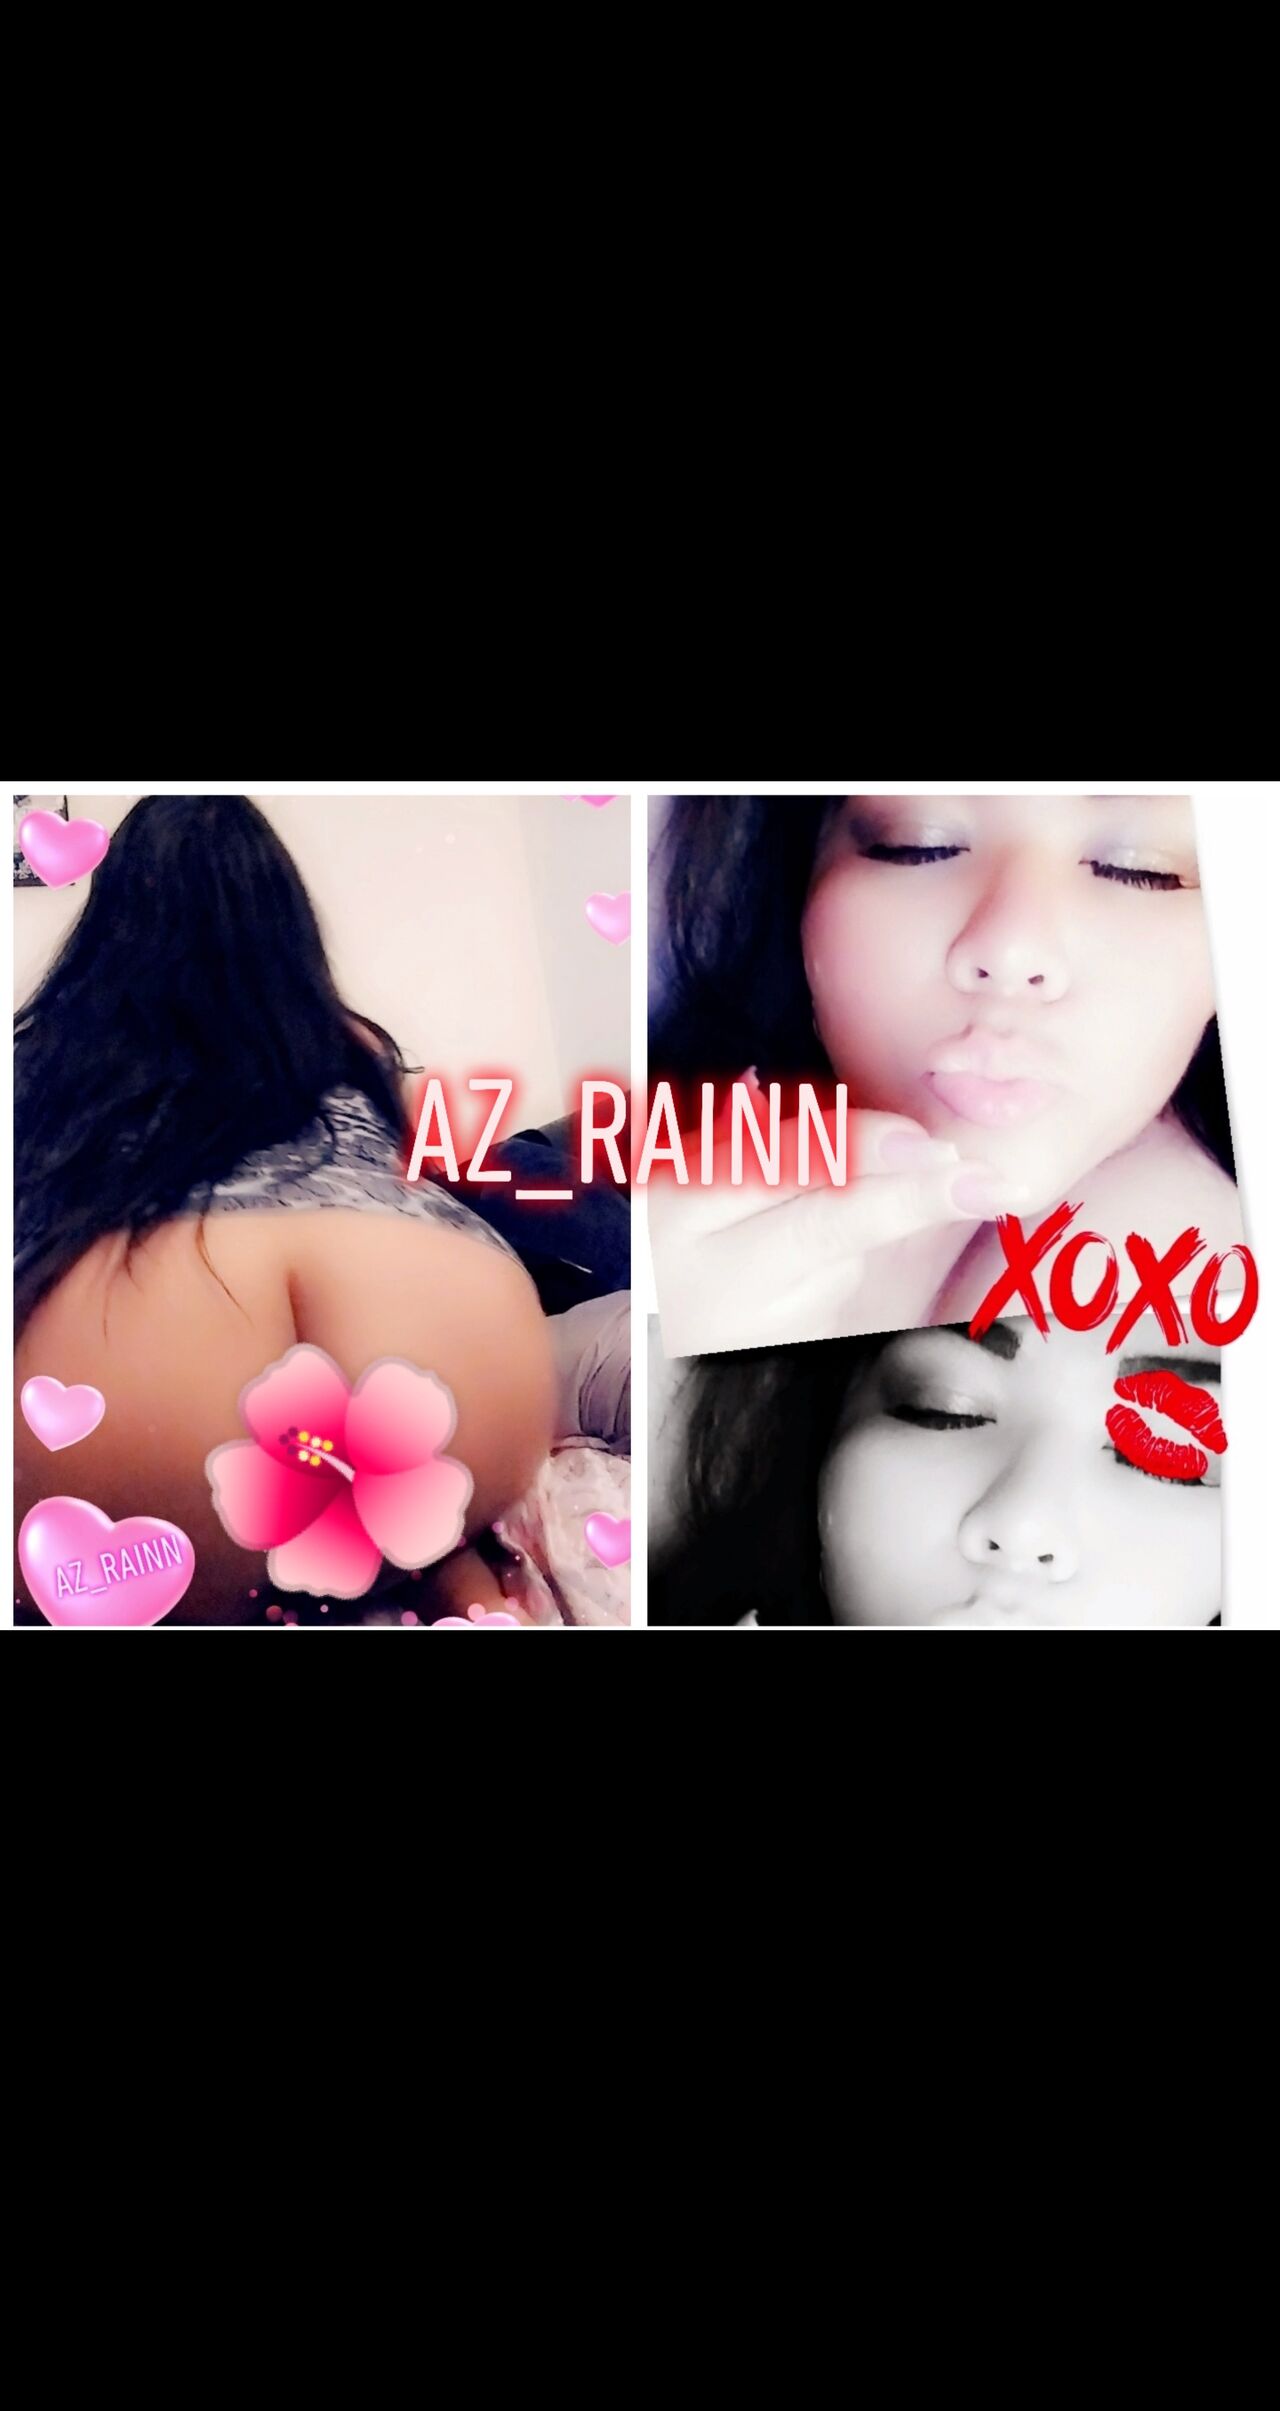 See Az.Rainn profile